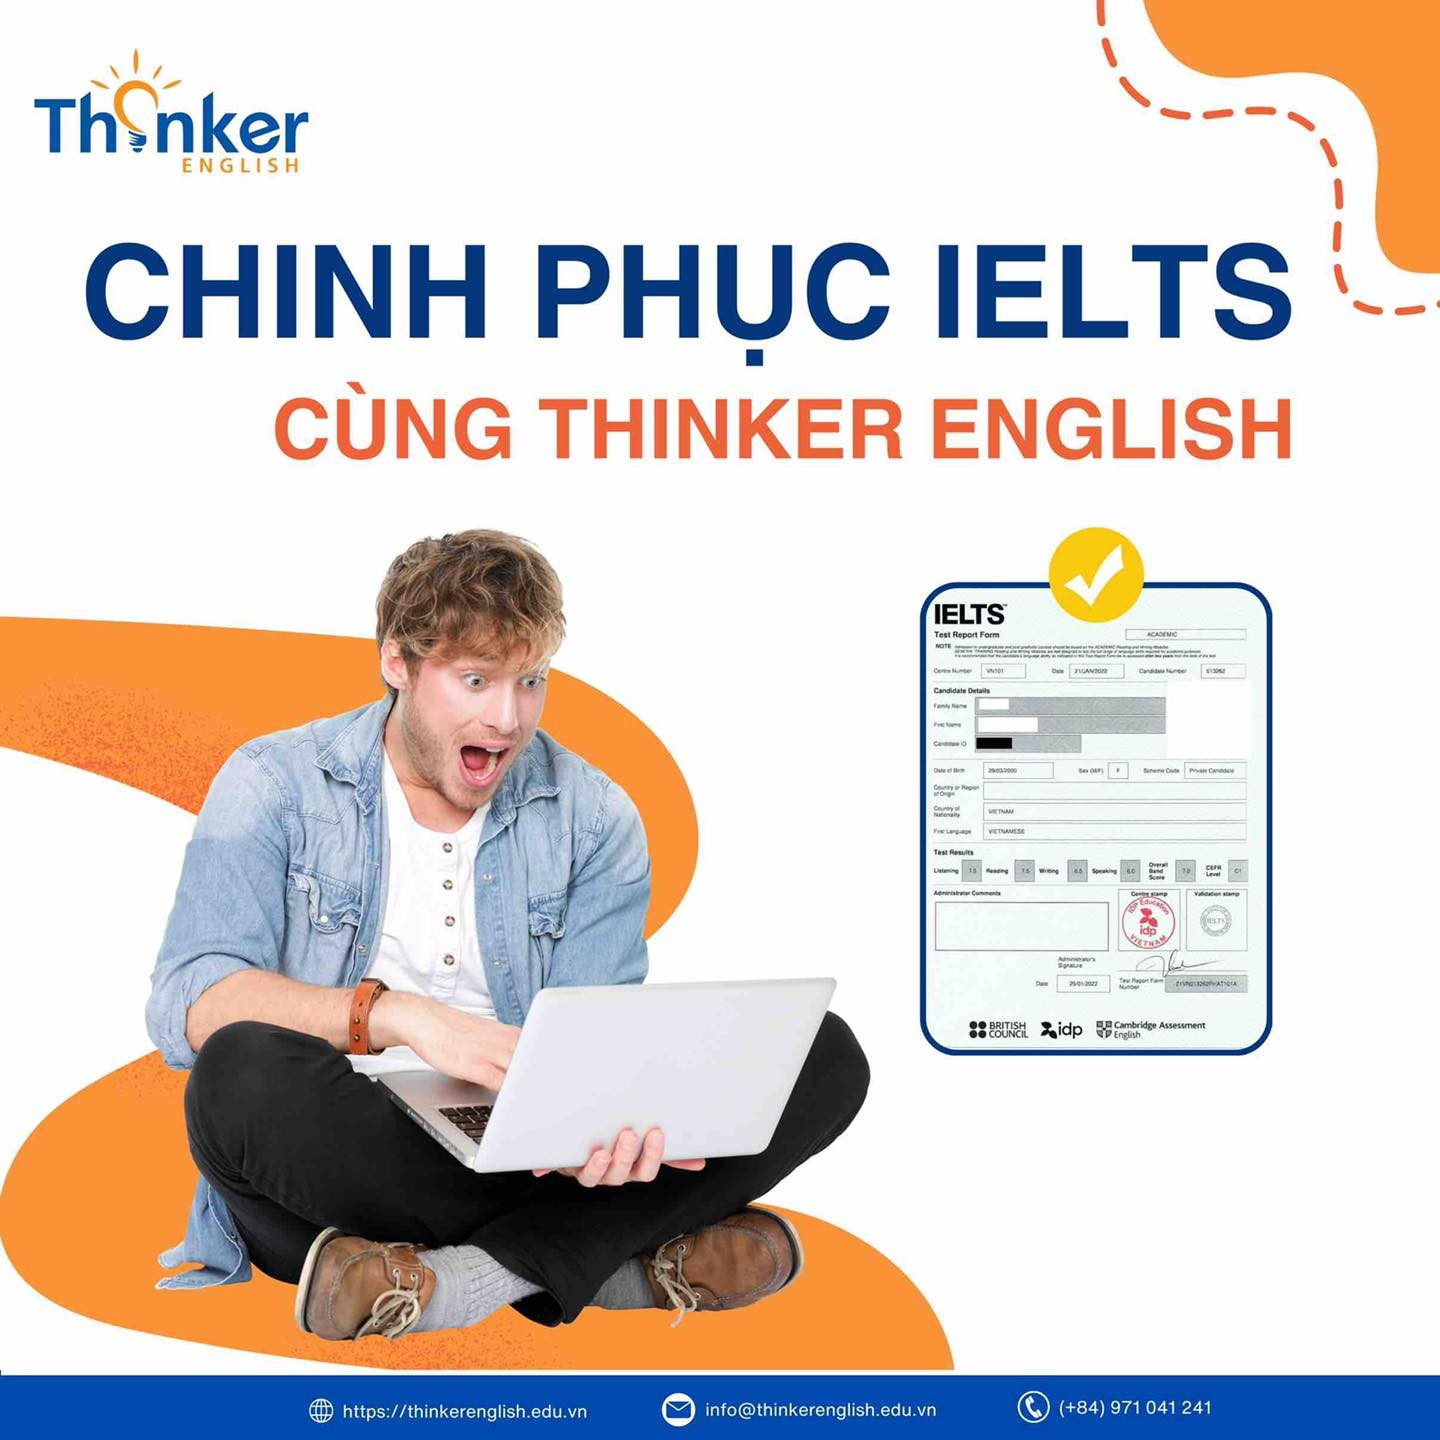 Đánh Giá Chất Lượng Trung Tâm Tiếng Anh Thinker English 7